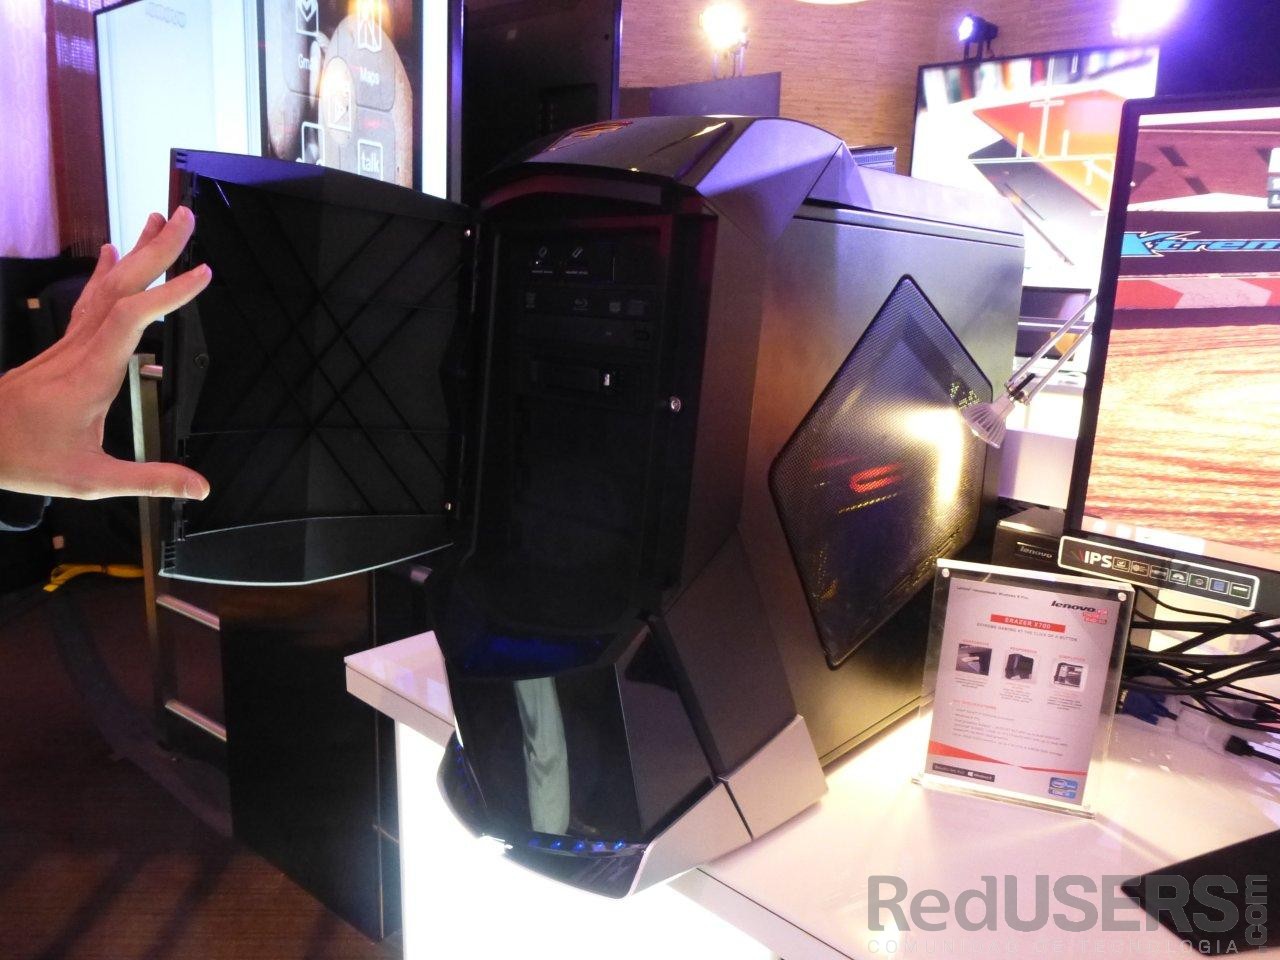 La imponente desktop Erazer de Lenovo, en exposición 